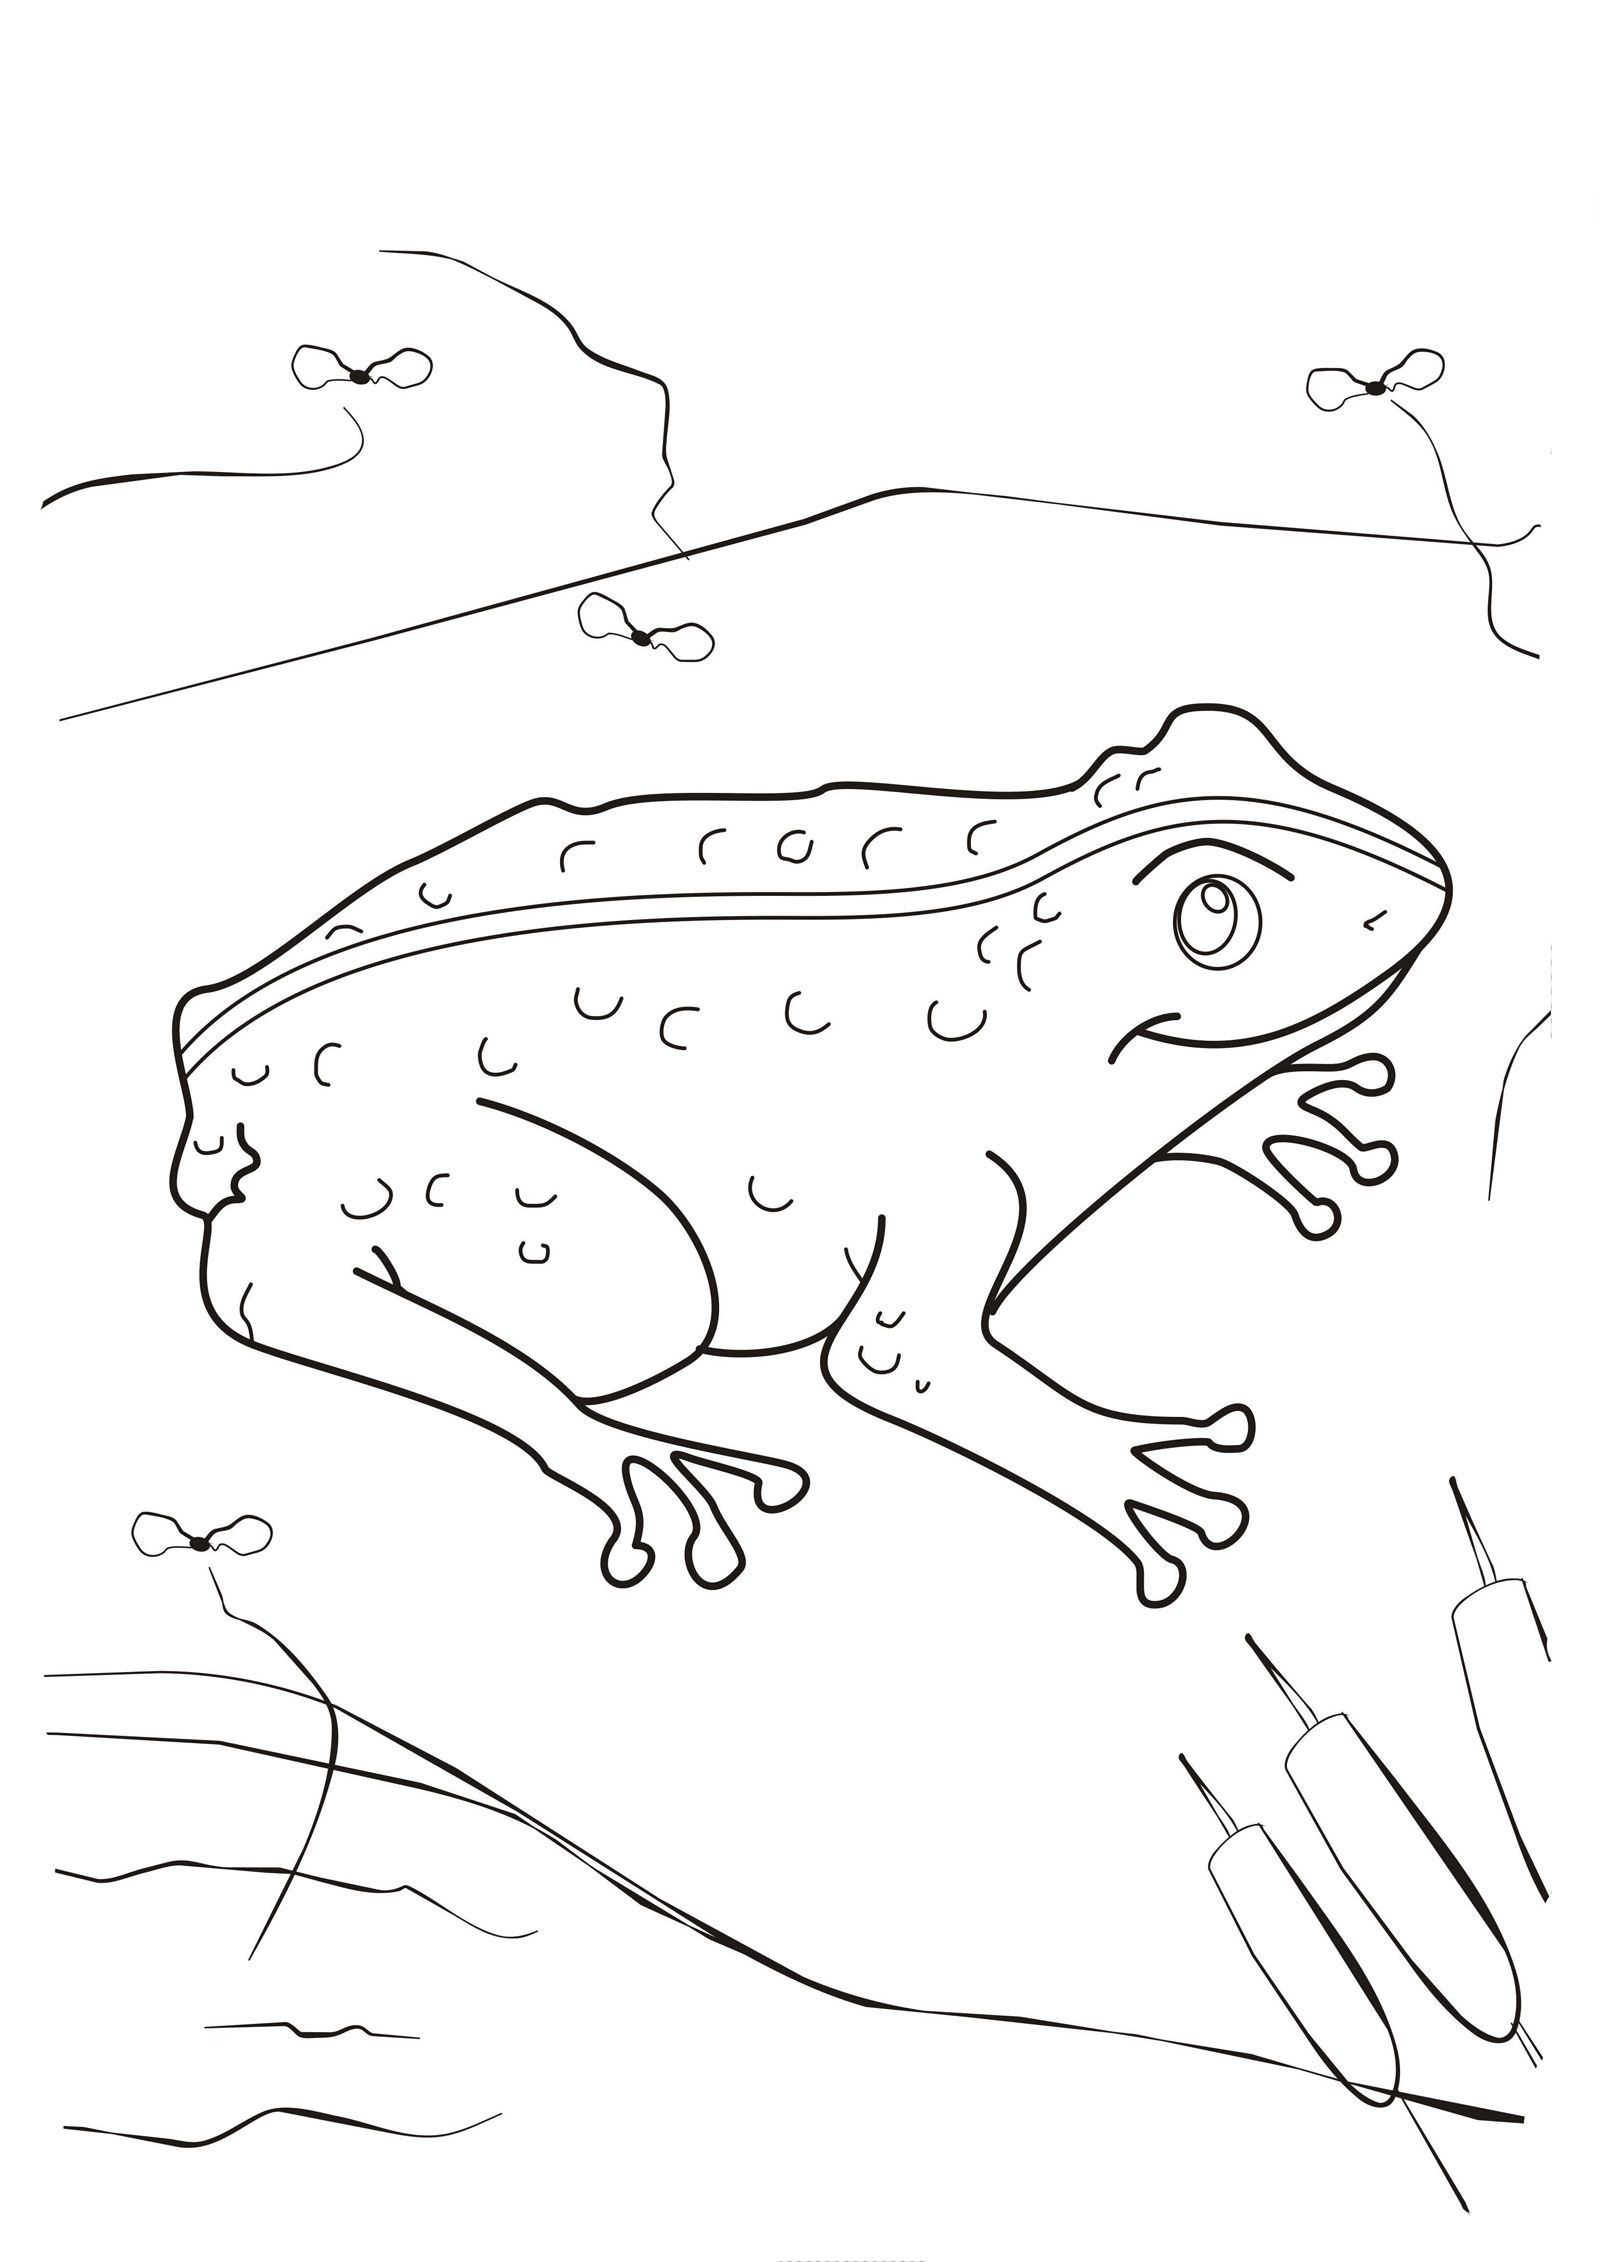 Рисунок к сказке о жабе и розе - 73 фото